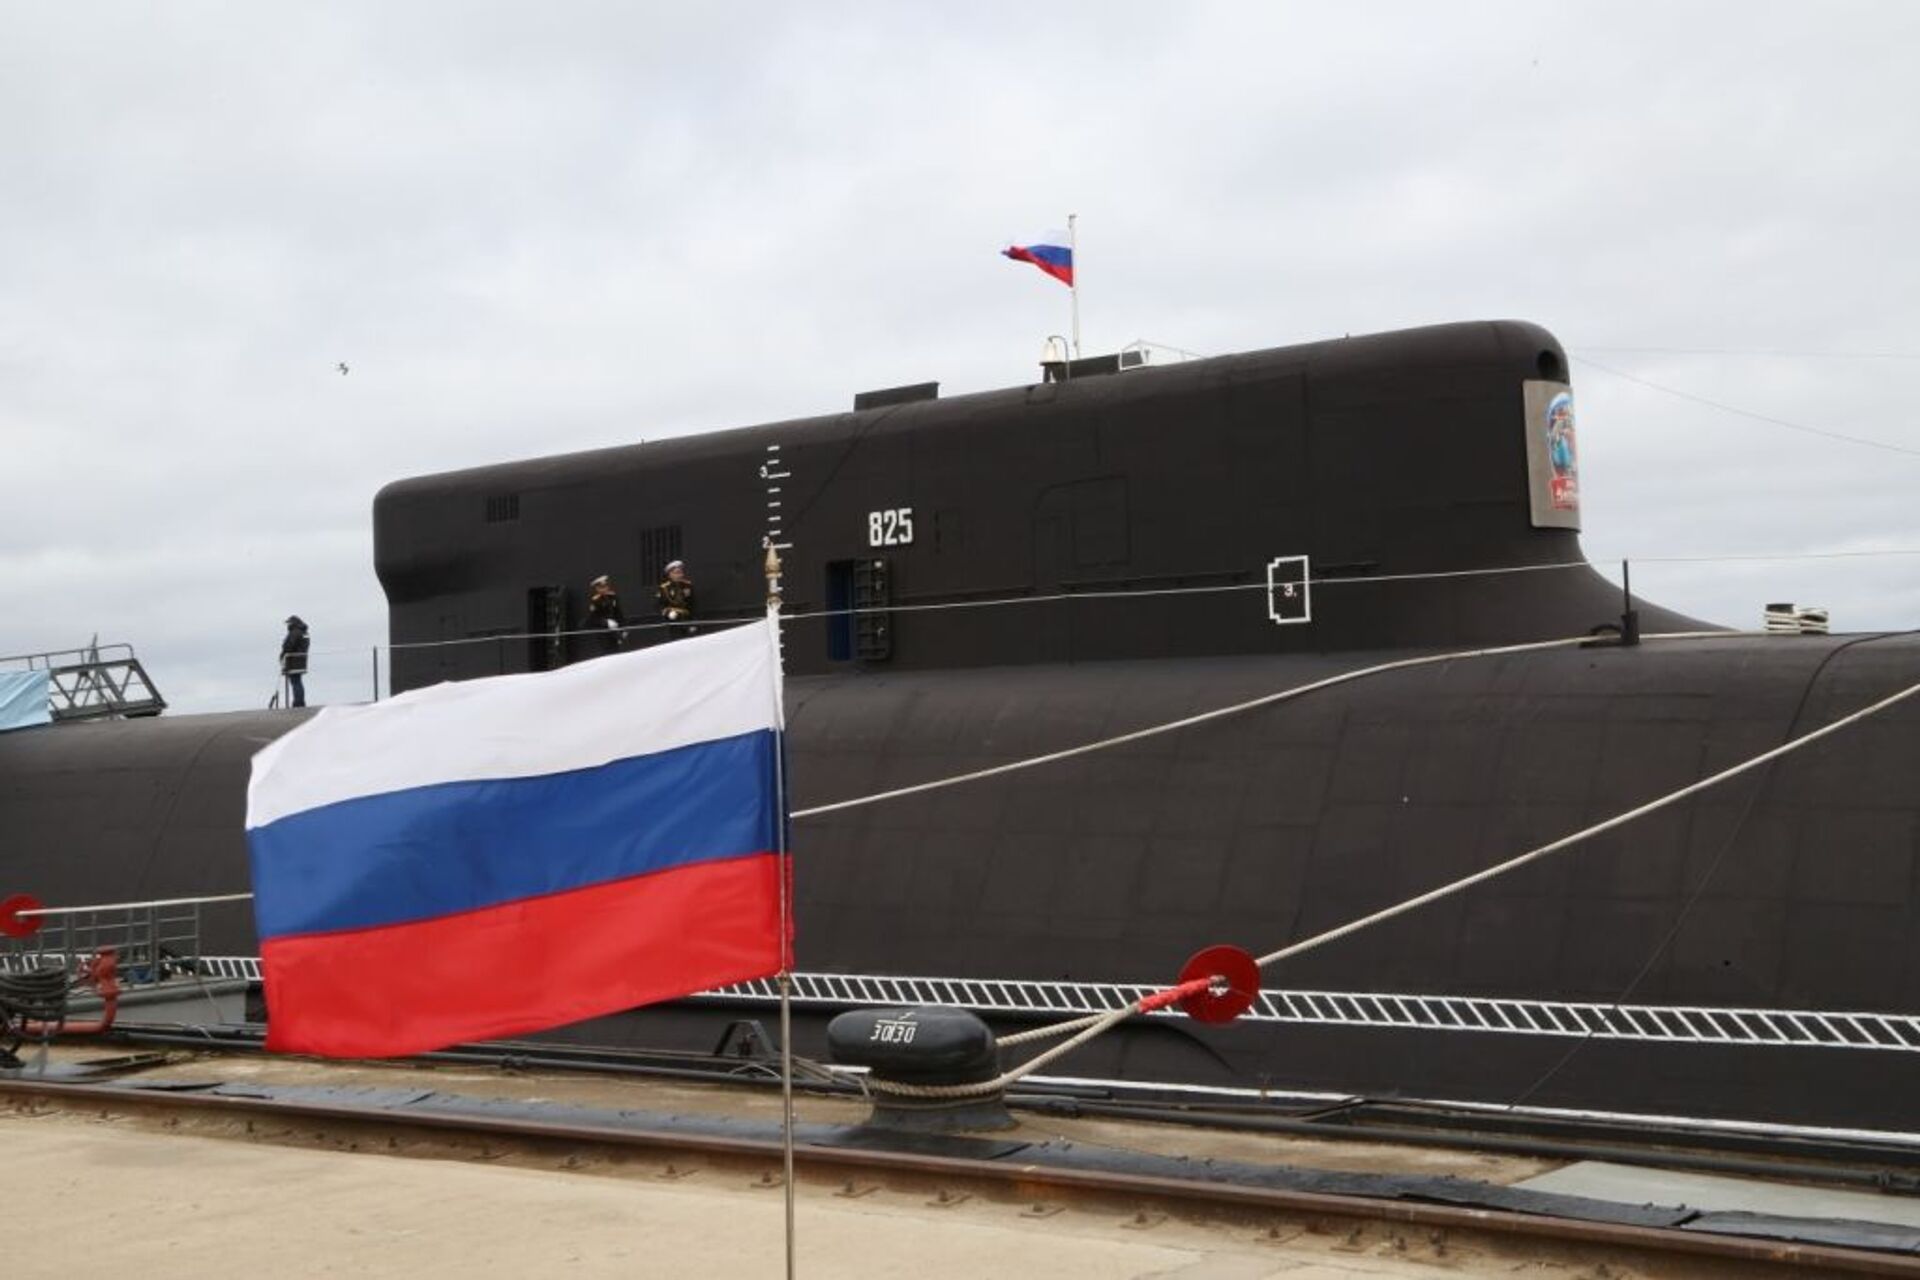 Aliados de Washington querem treinar mais com EUA 'caça' de submarinos russos e chineses, diz mídia - Sputnik Brasil, 1920, 02.07.2021